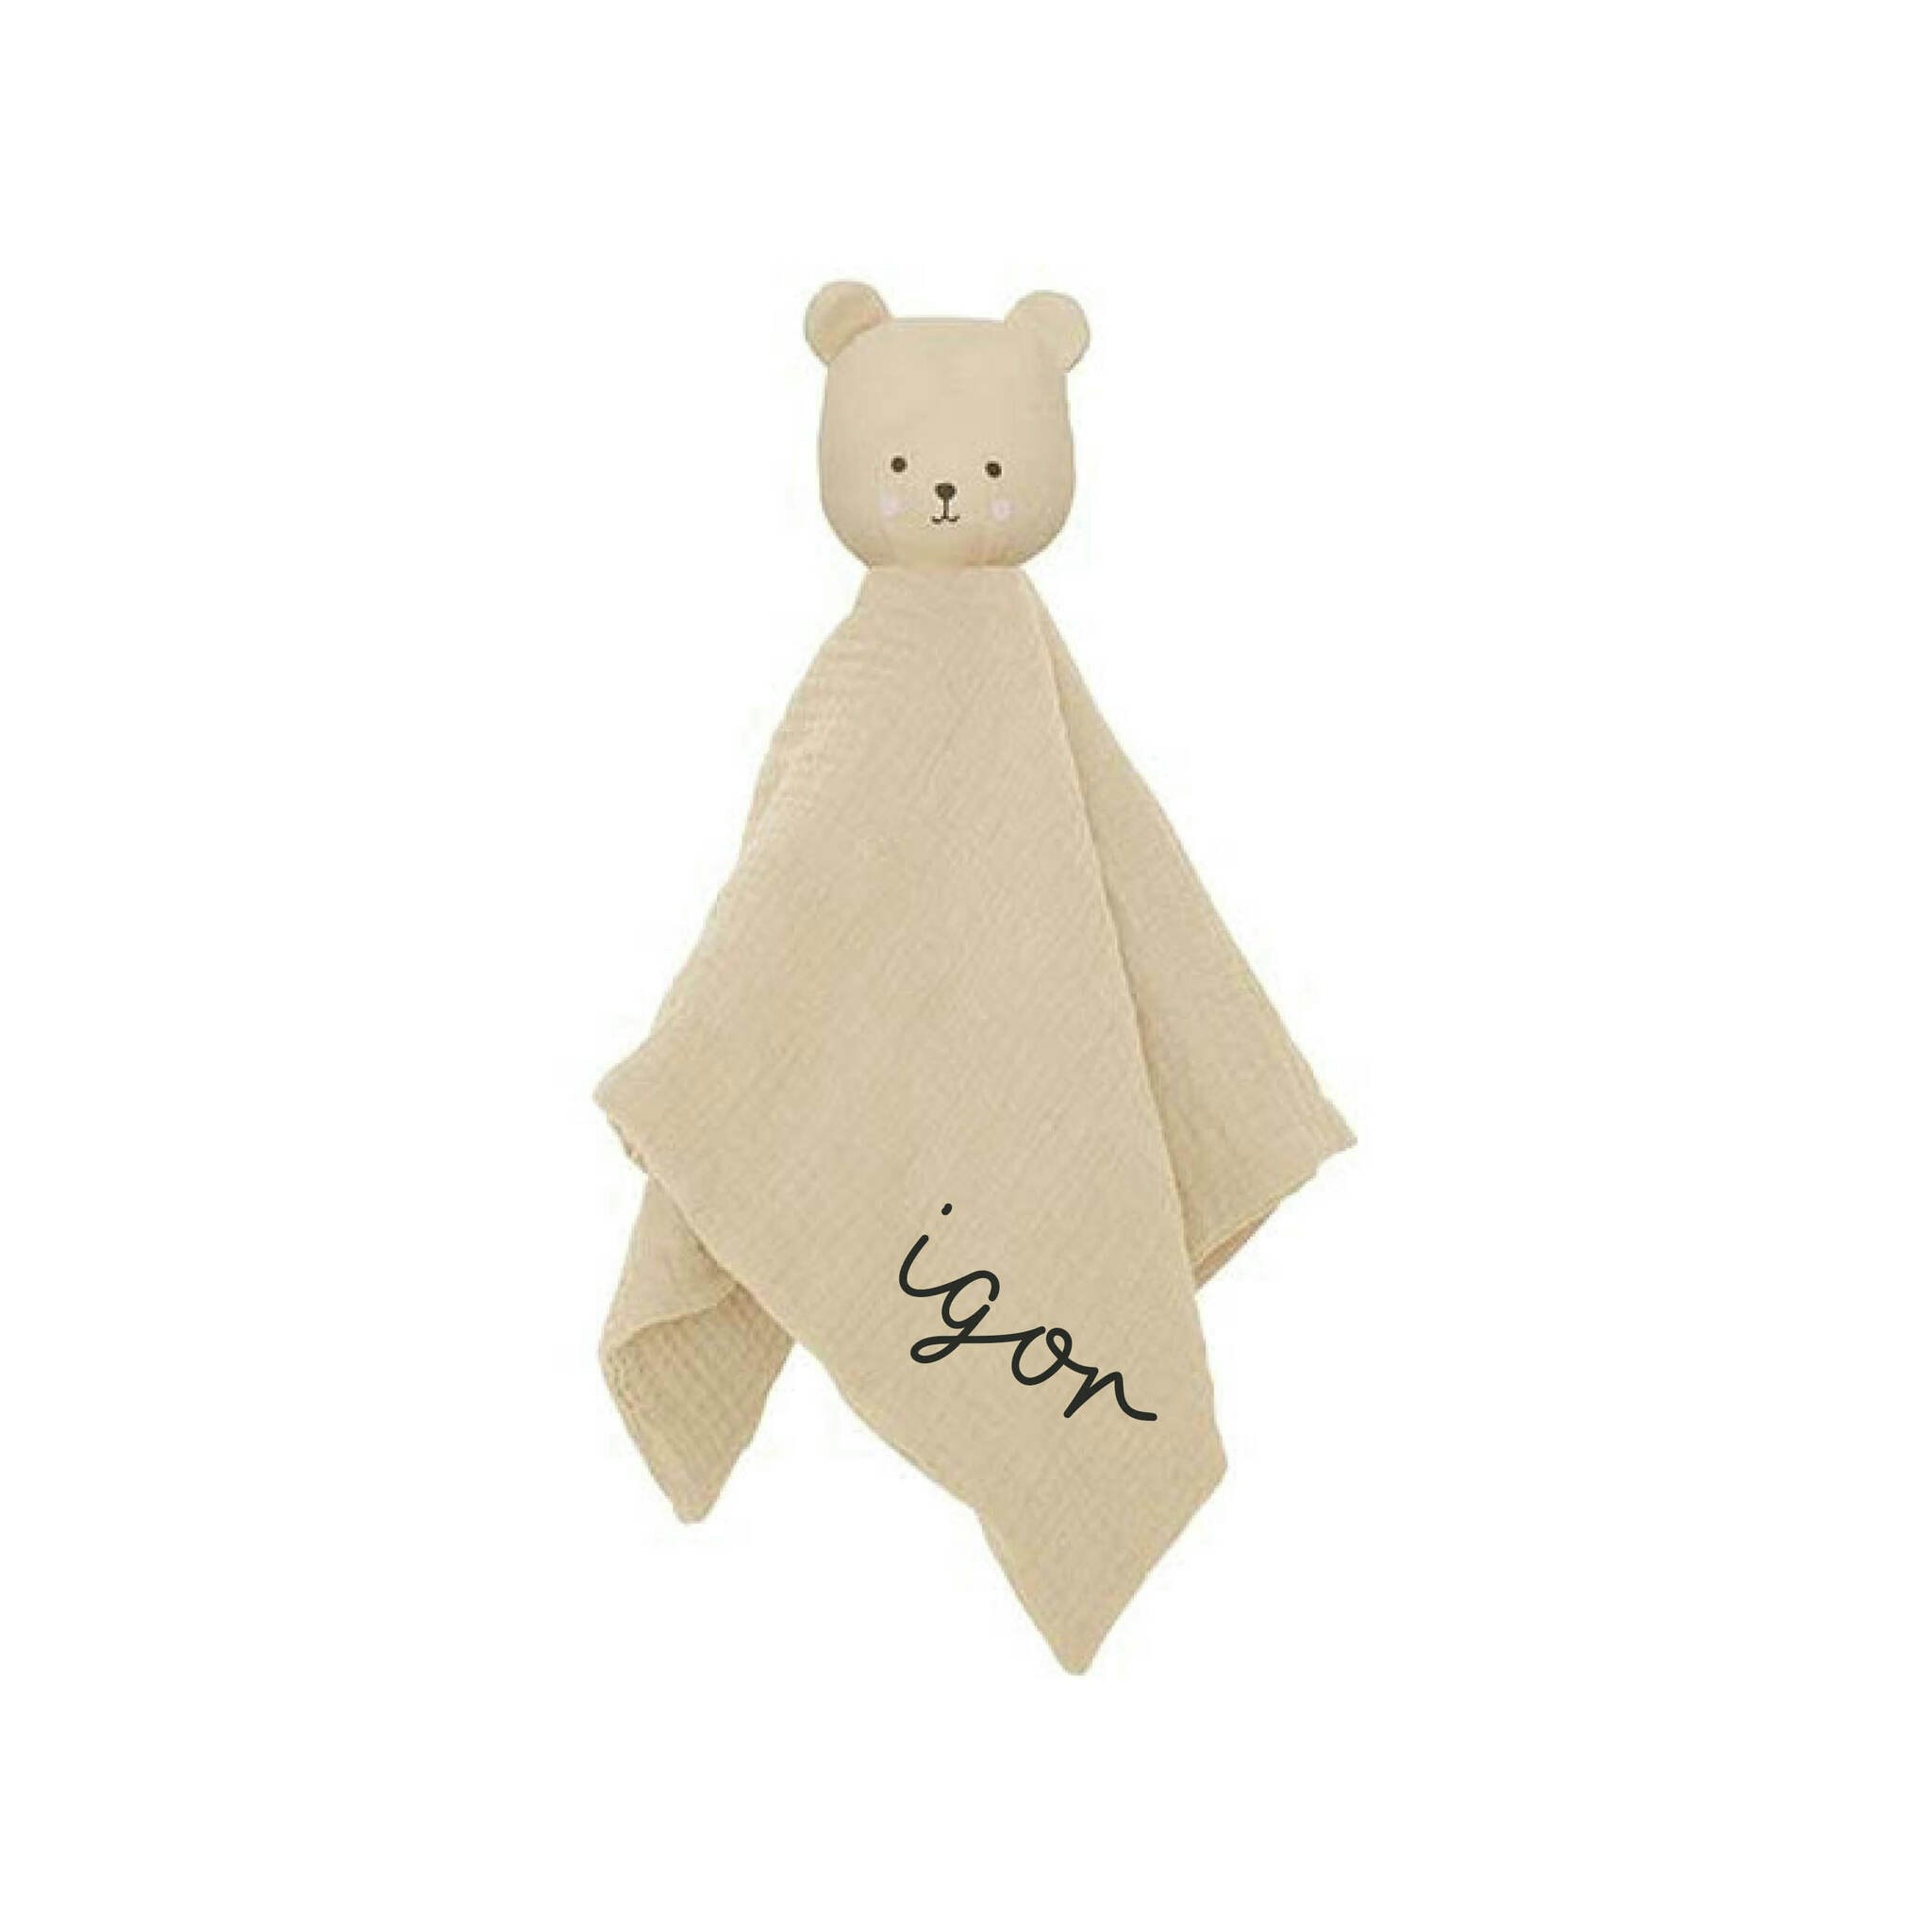 Snuttefilt björn med namn - Personlig snuttefilt - MiNora - Personliga  presenter och barnkläder